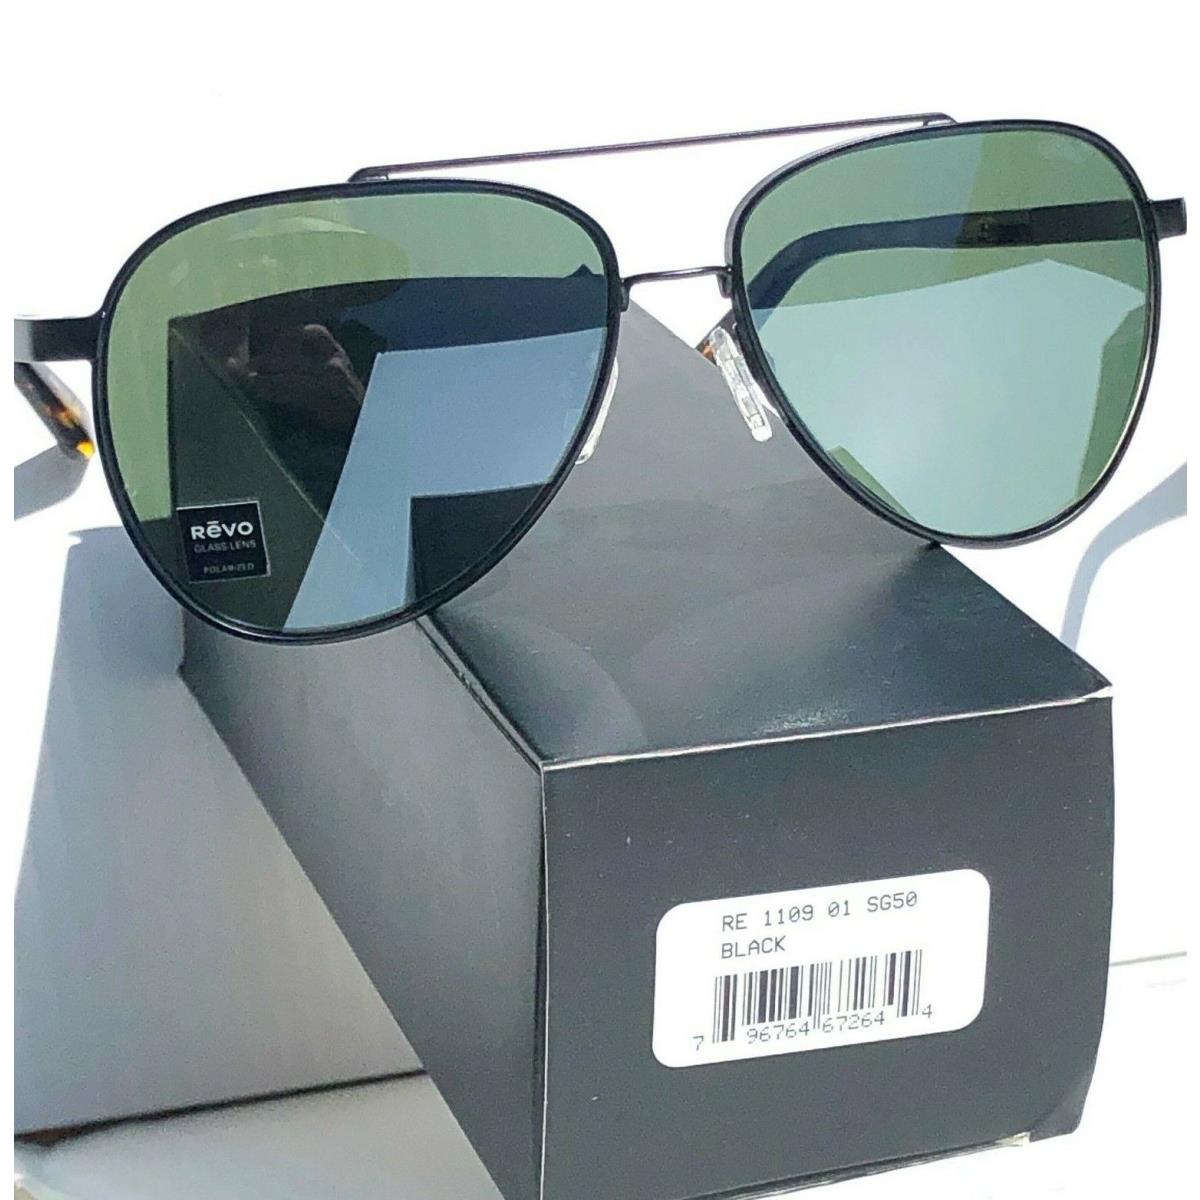 Revo sunglasses Arthur - Black Frame, Green Lens